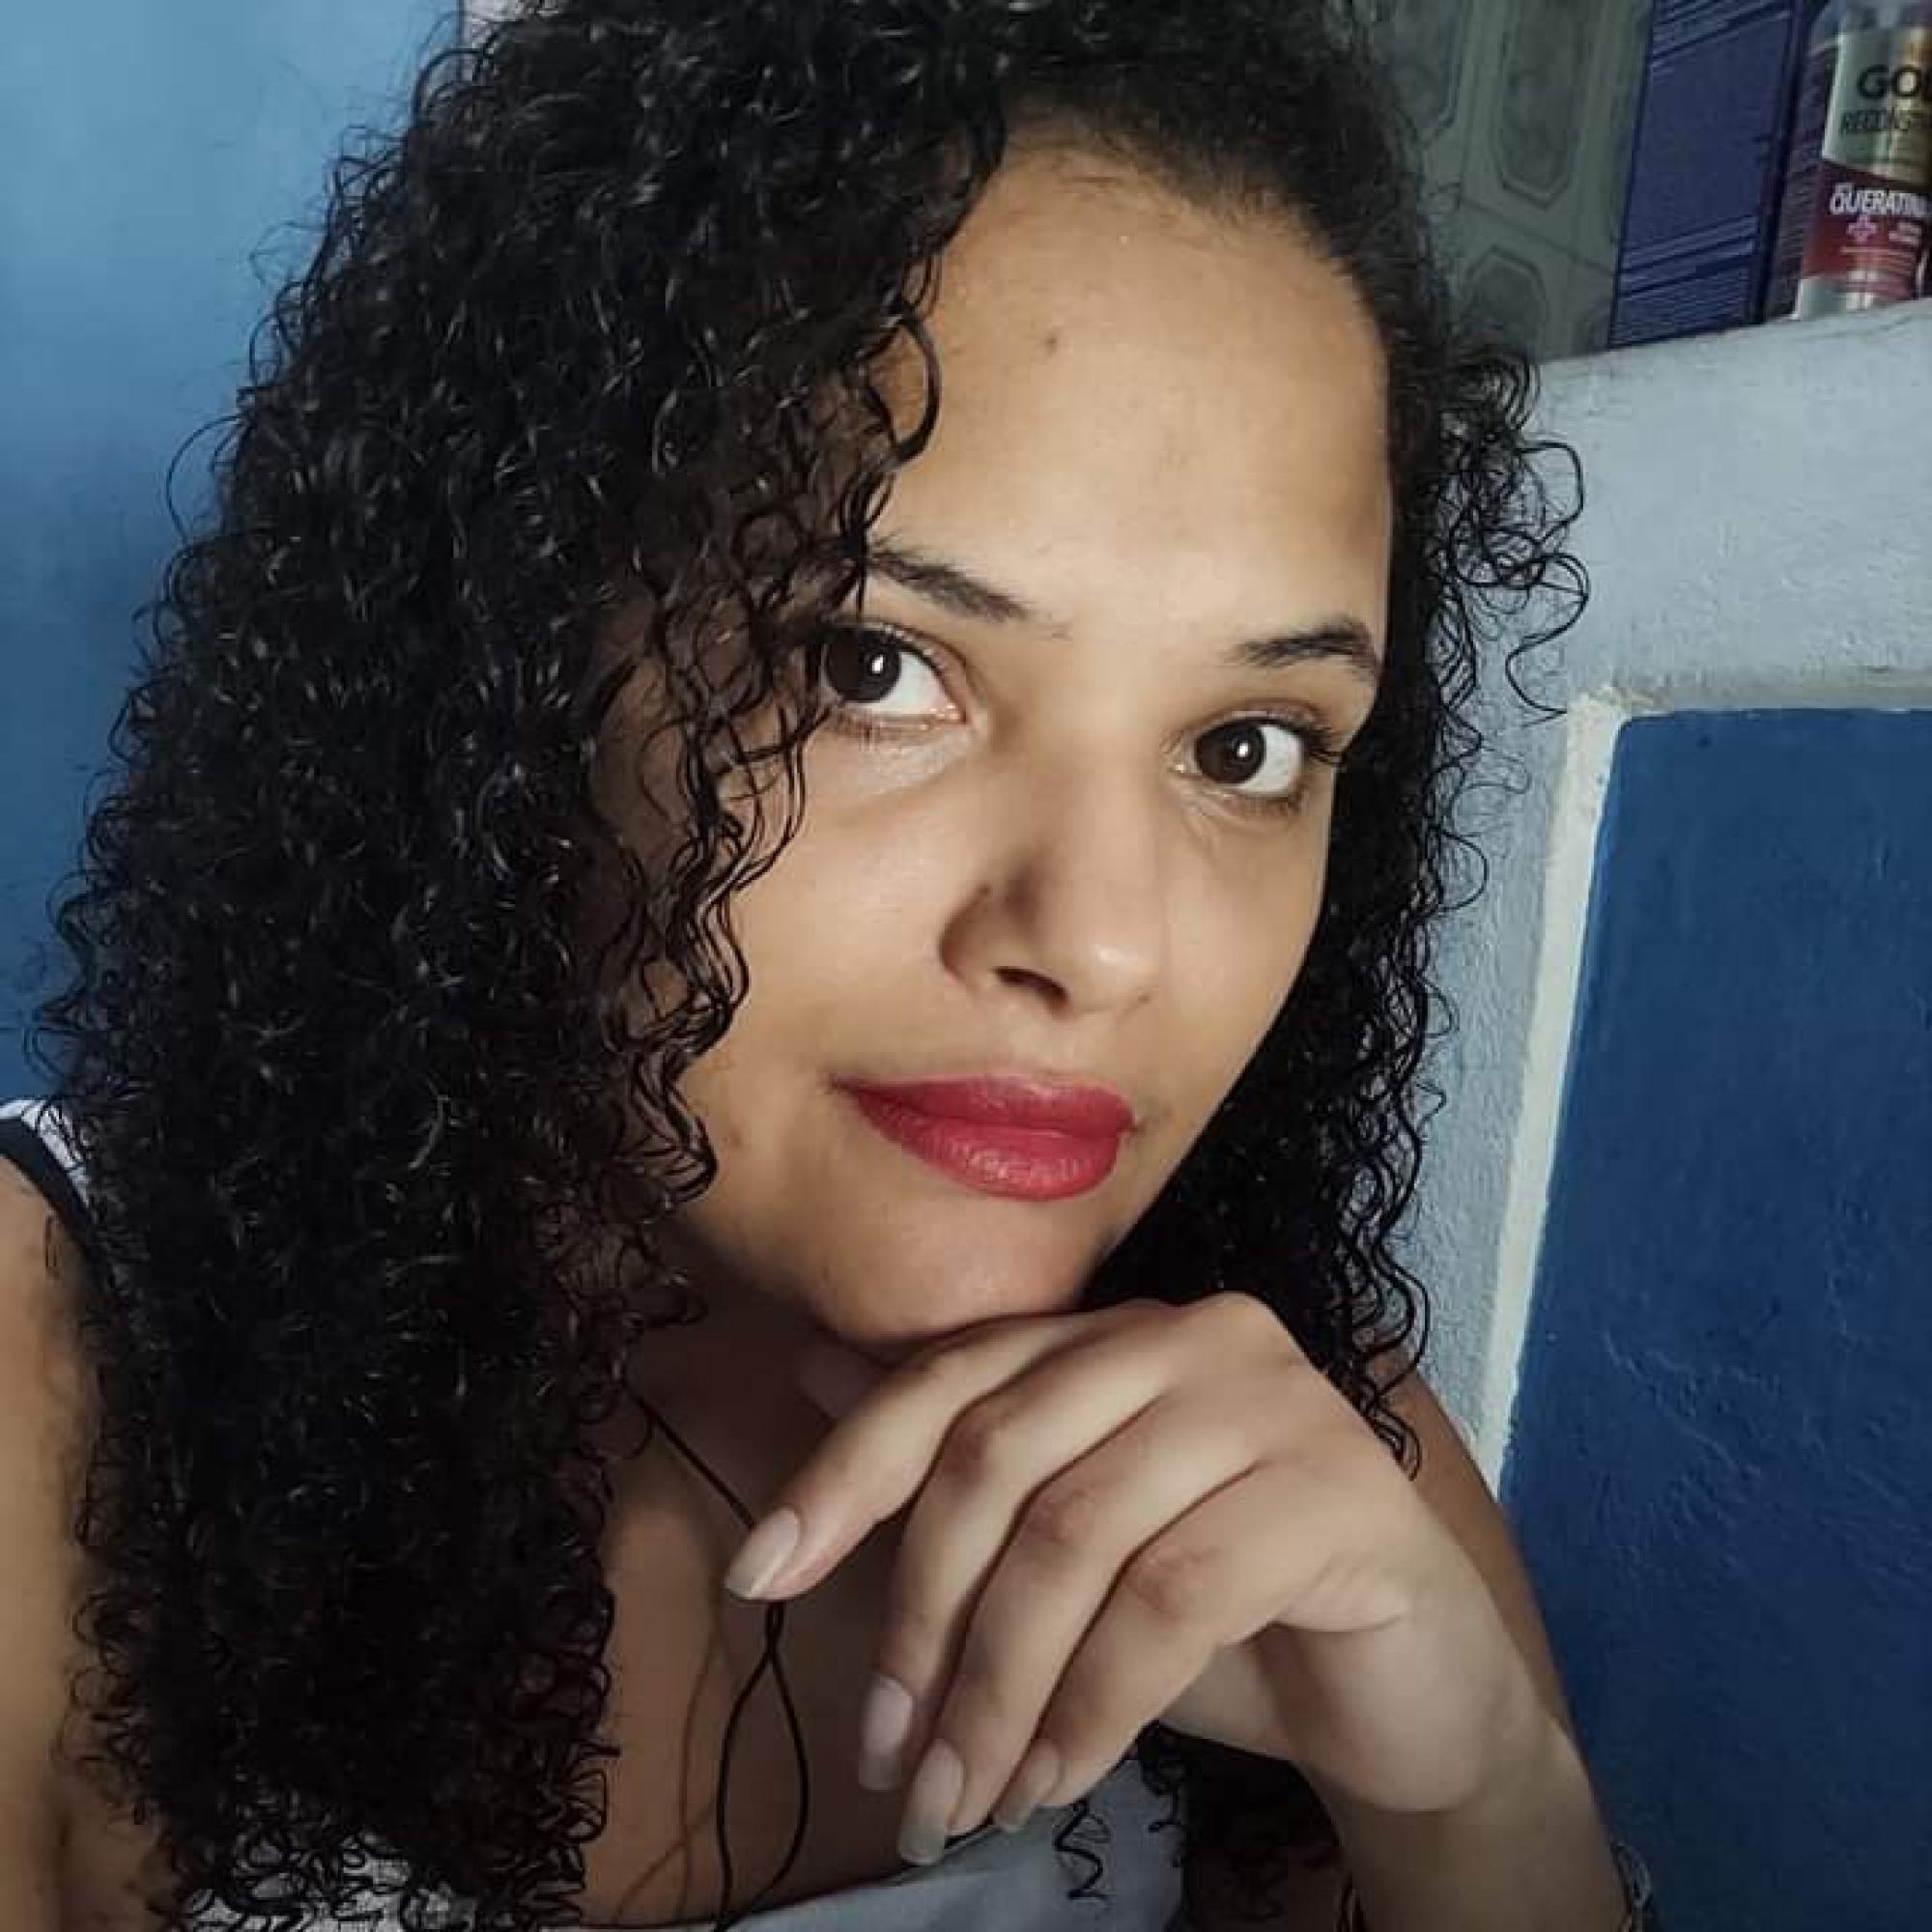 Bianca Cavalcante dos Santos